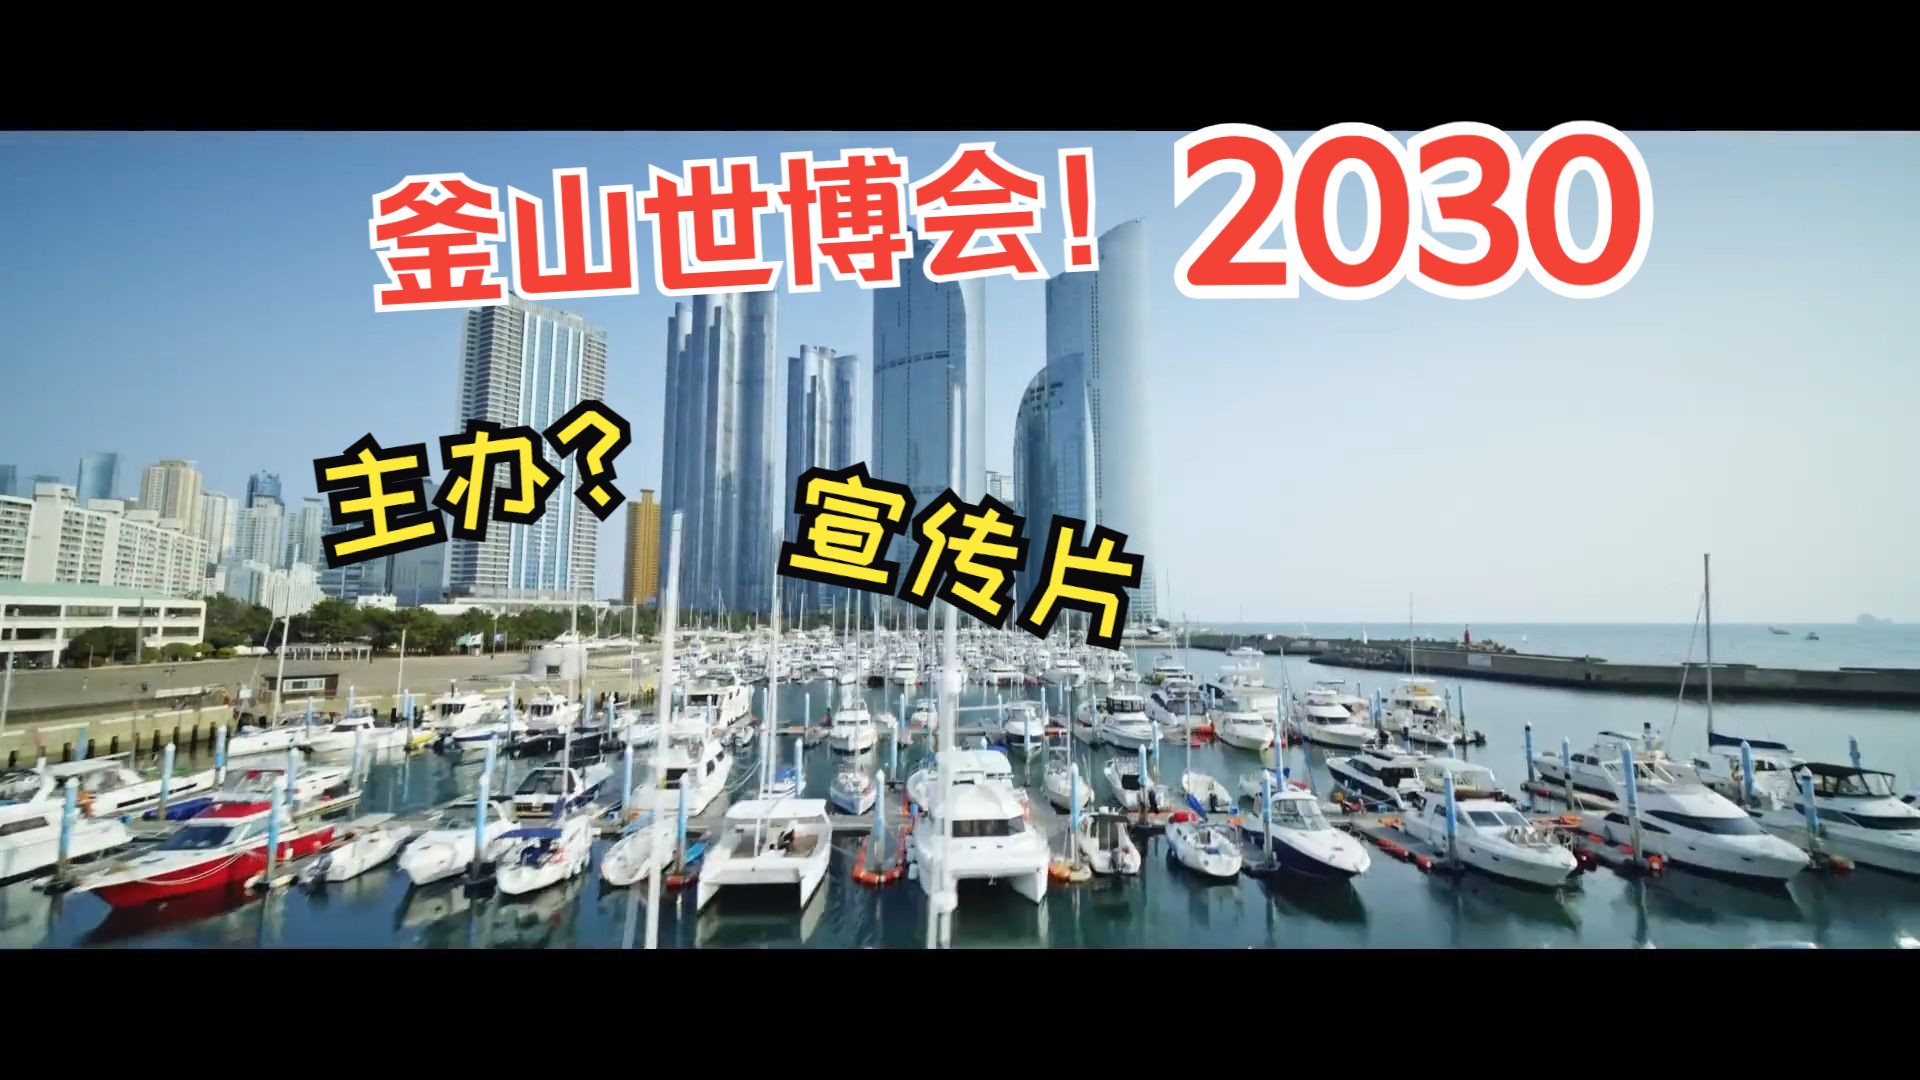 釜山准备好了?l 韩国 l 2030 世博会!